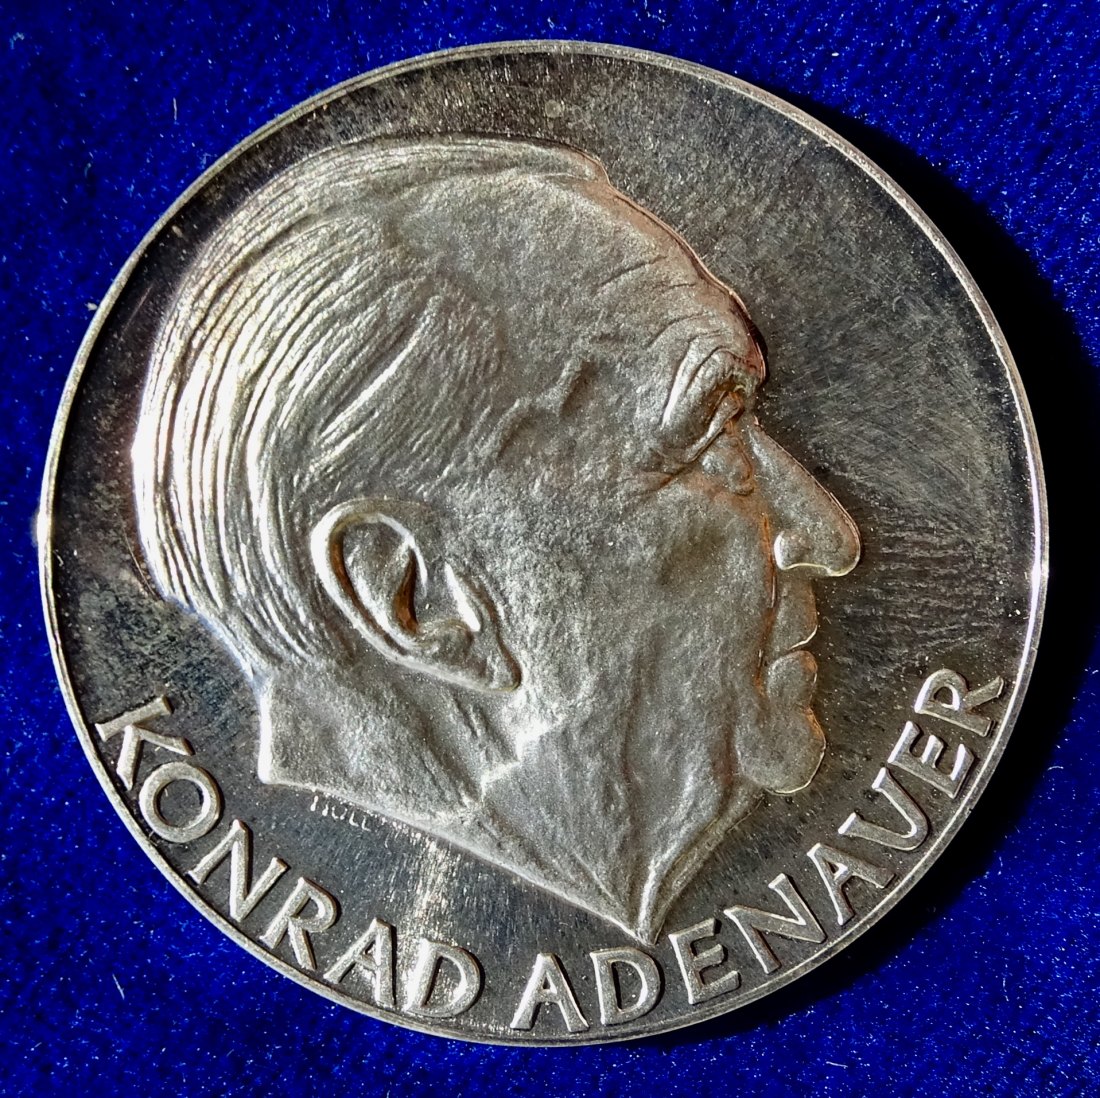  Konrad Adenauer 1967 Silber Medaille von Holl auf seinen Tod.   